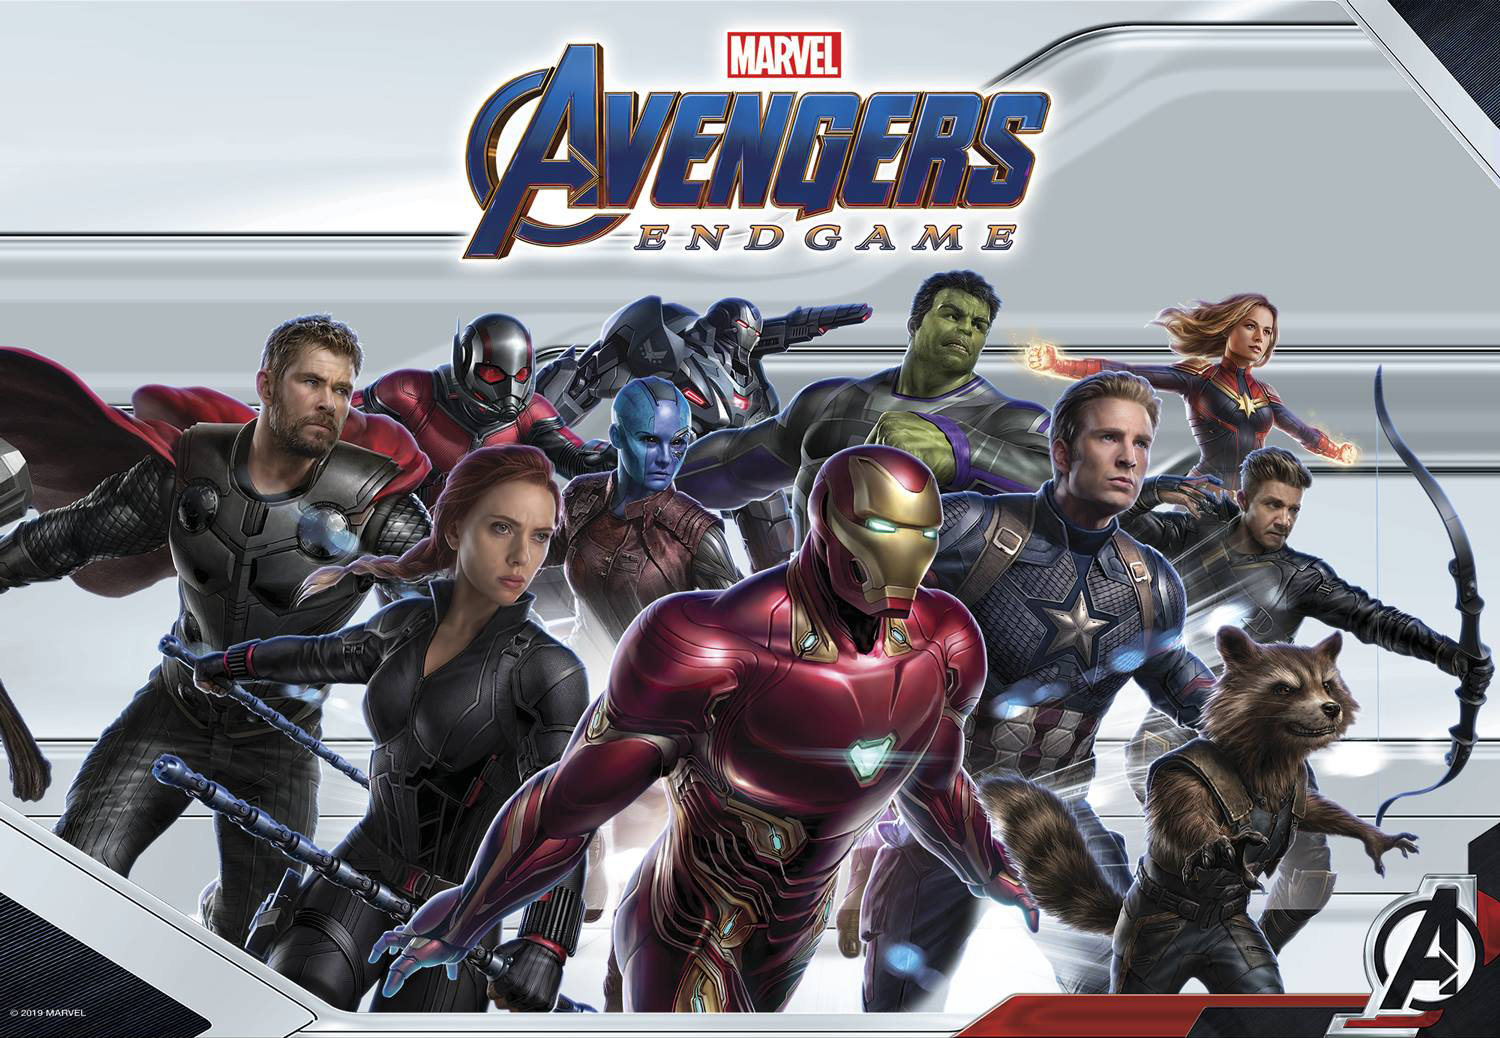 Marvel's Avengers: Endgame - The Art Of The Movie (Hardcover